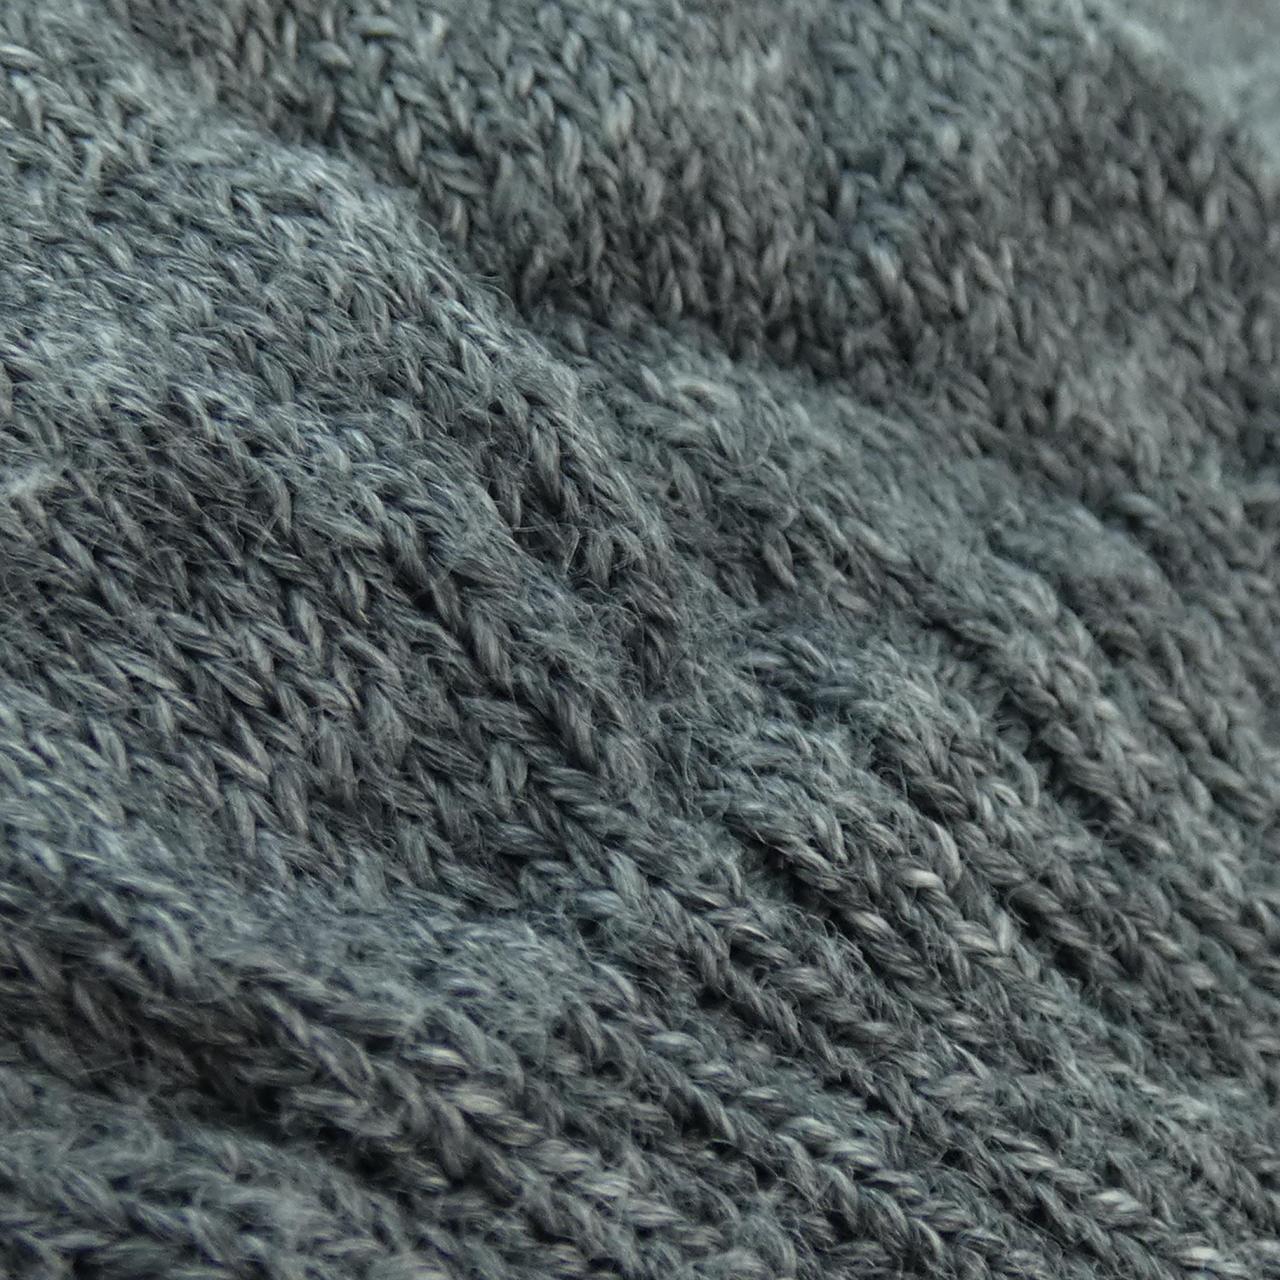 BALENCIAGA BALENCIAGA knitwear